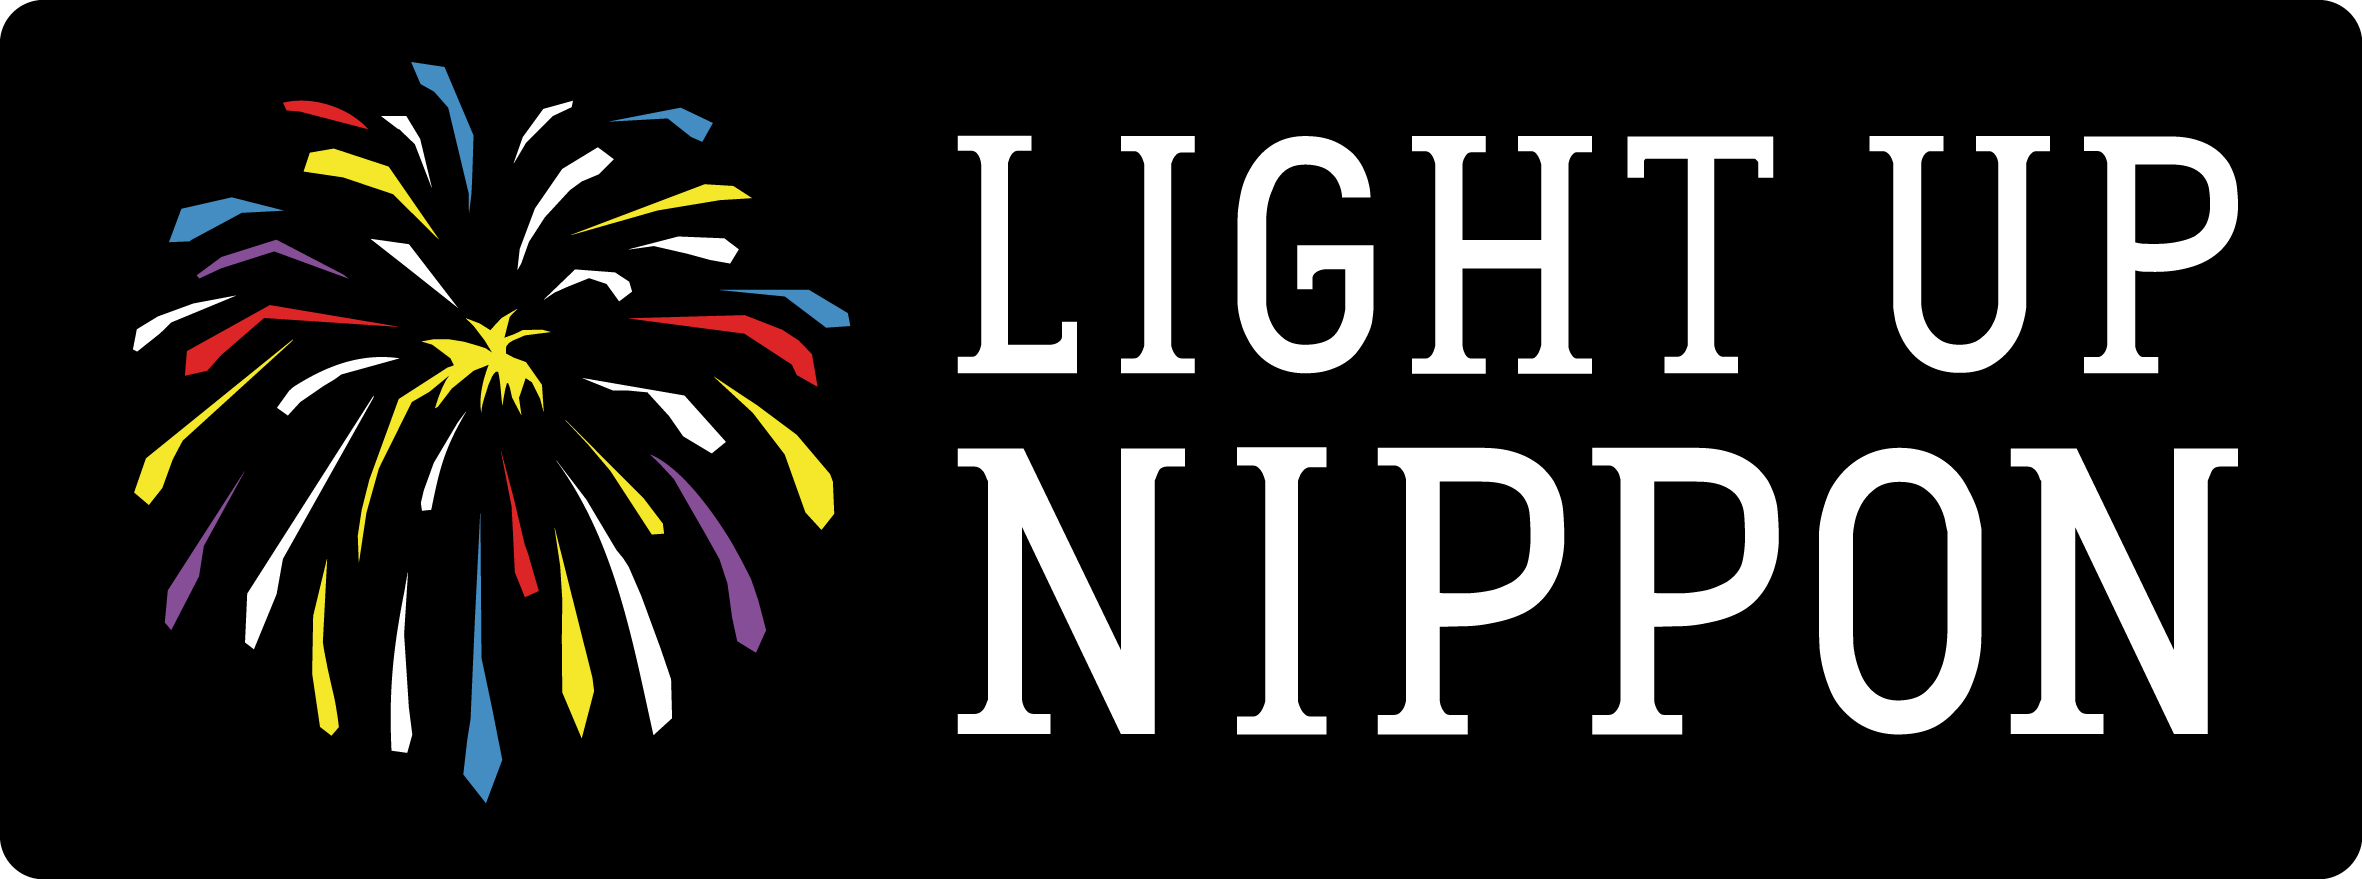 東日本大震災 追悼と復興の花火 Light Up Nippon 開催 Light Up Nippon実行委員会のプレスリリース